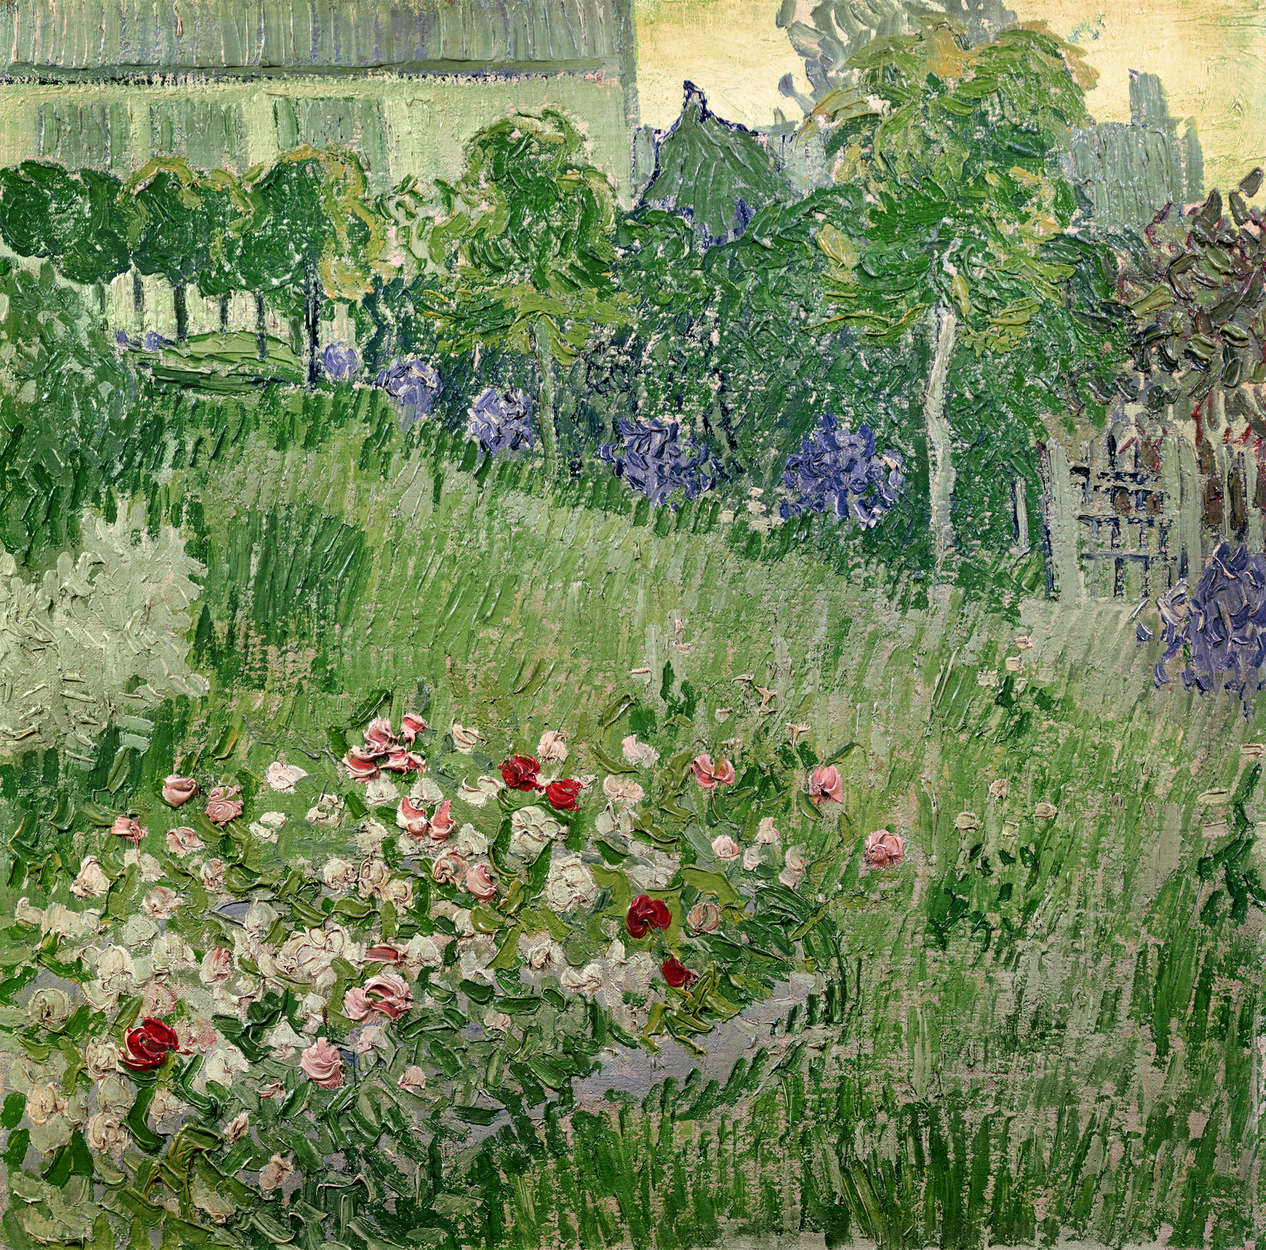             De tuin van Daubigny" muurschildering van Vincent van Gogh
        